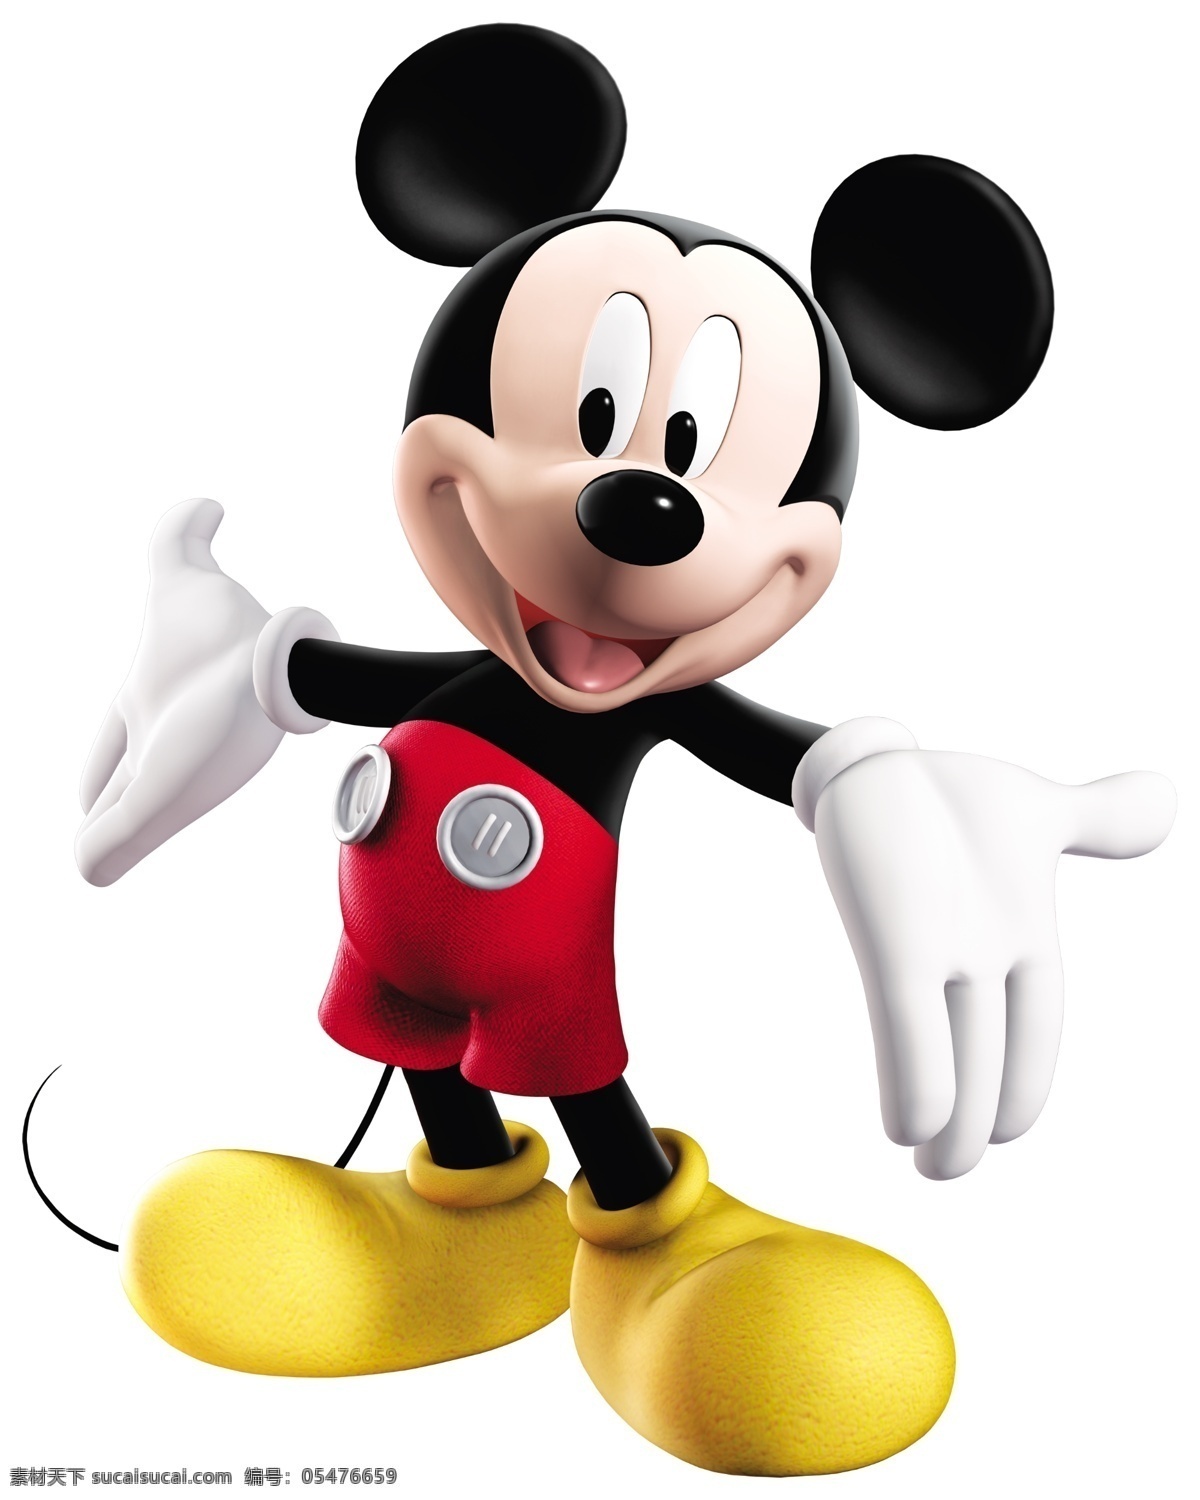 迪士尼 米奇 老鼠 psd素材 卡通 可爱的 米奇老鼠 psd源文件